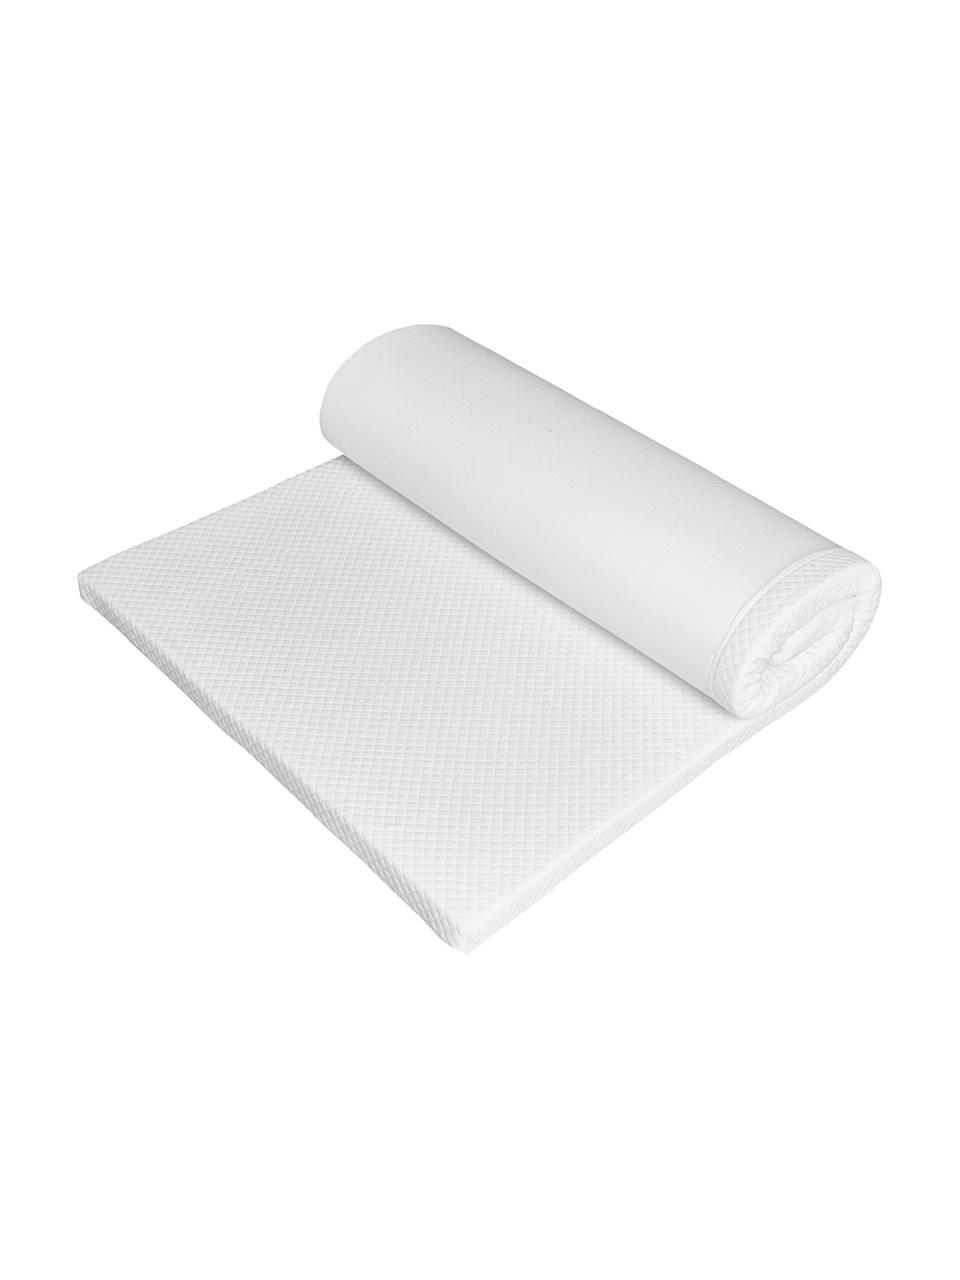 Viscoelastische Memory-Foam Matratzenauflage Premium, Bezug: 60% Polyester, 40% Viskos, Weiß, 200 x 200 cm